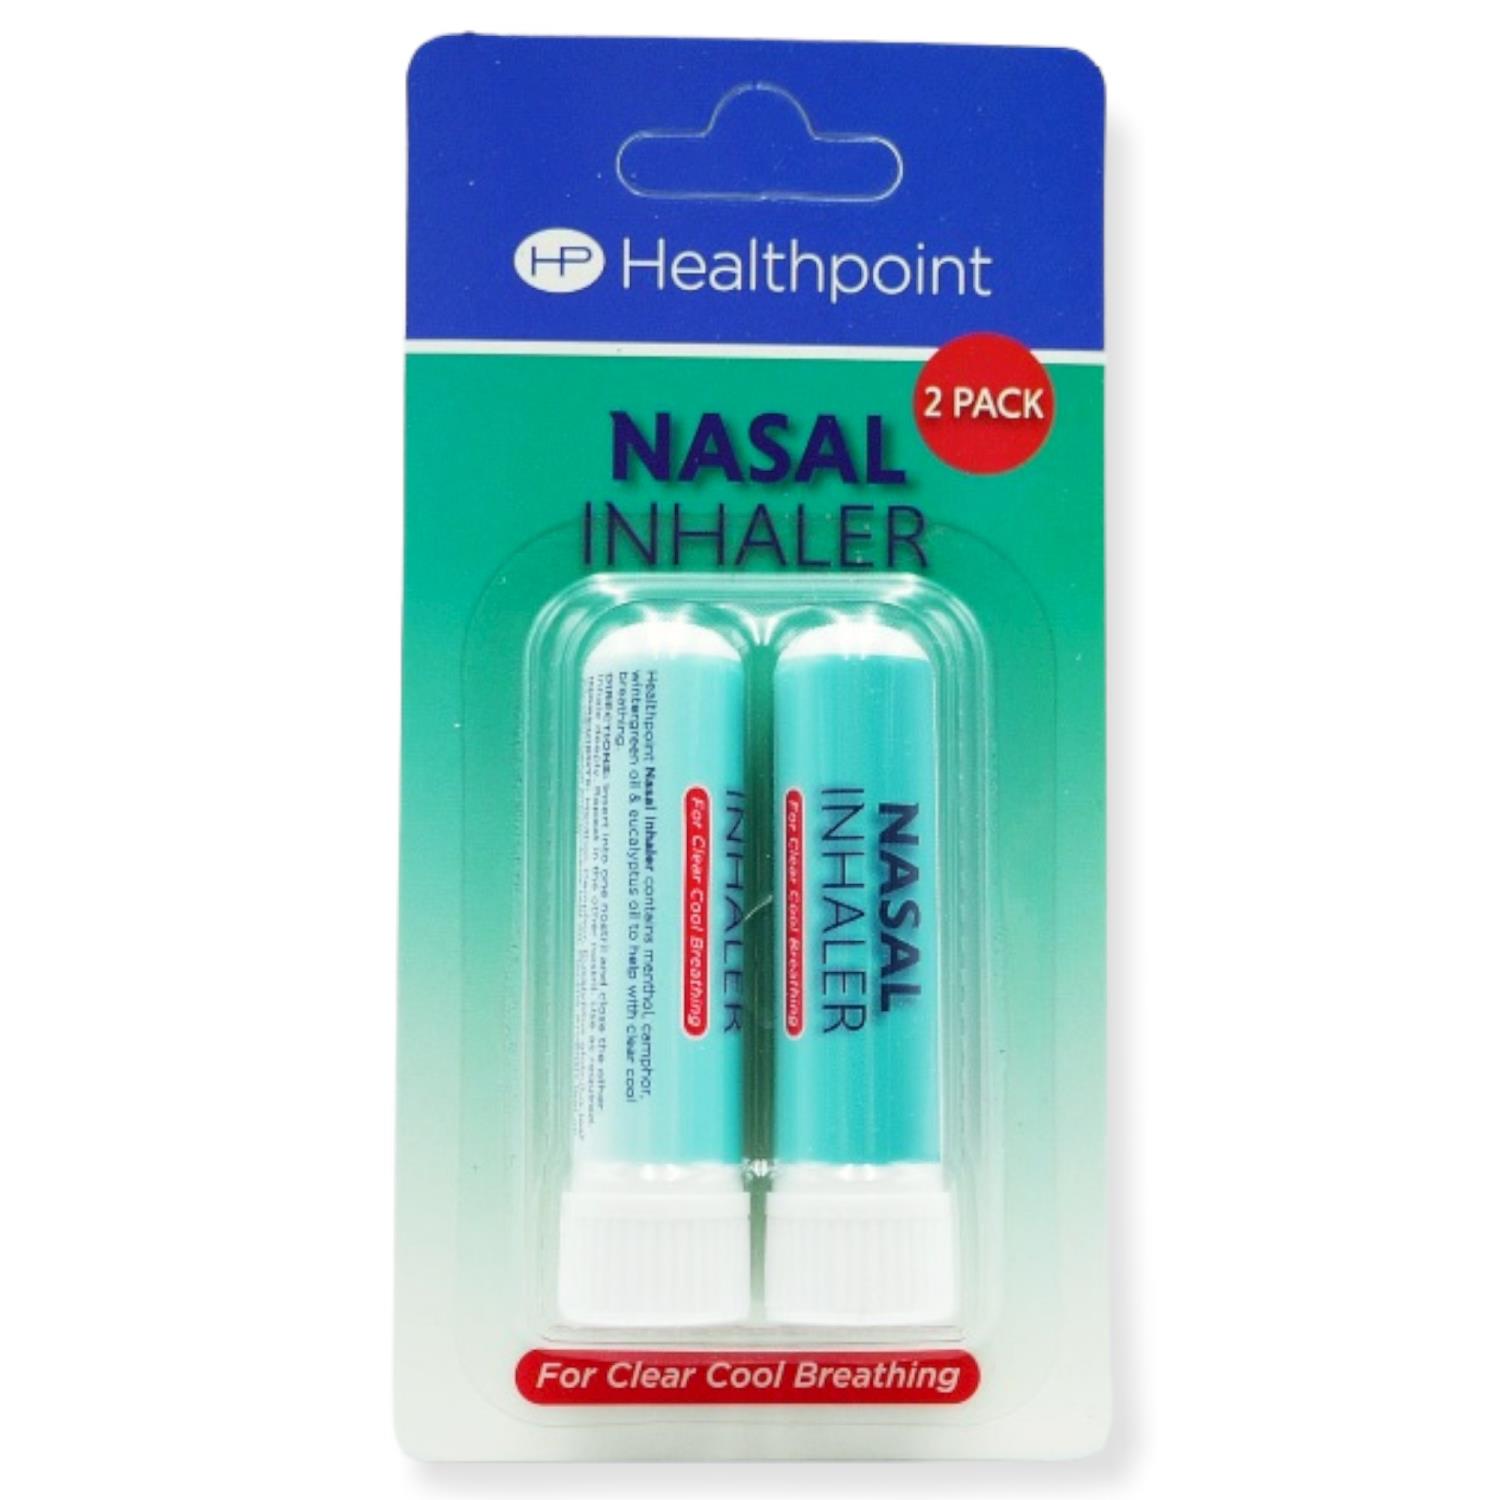 Healthpoint Nasal Inhaler 2pk